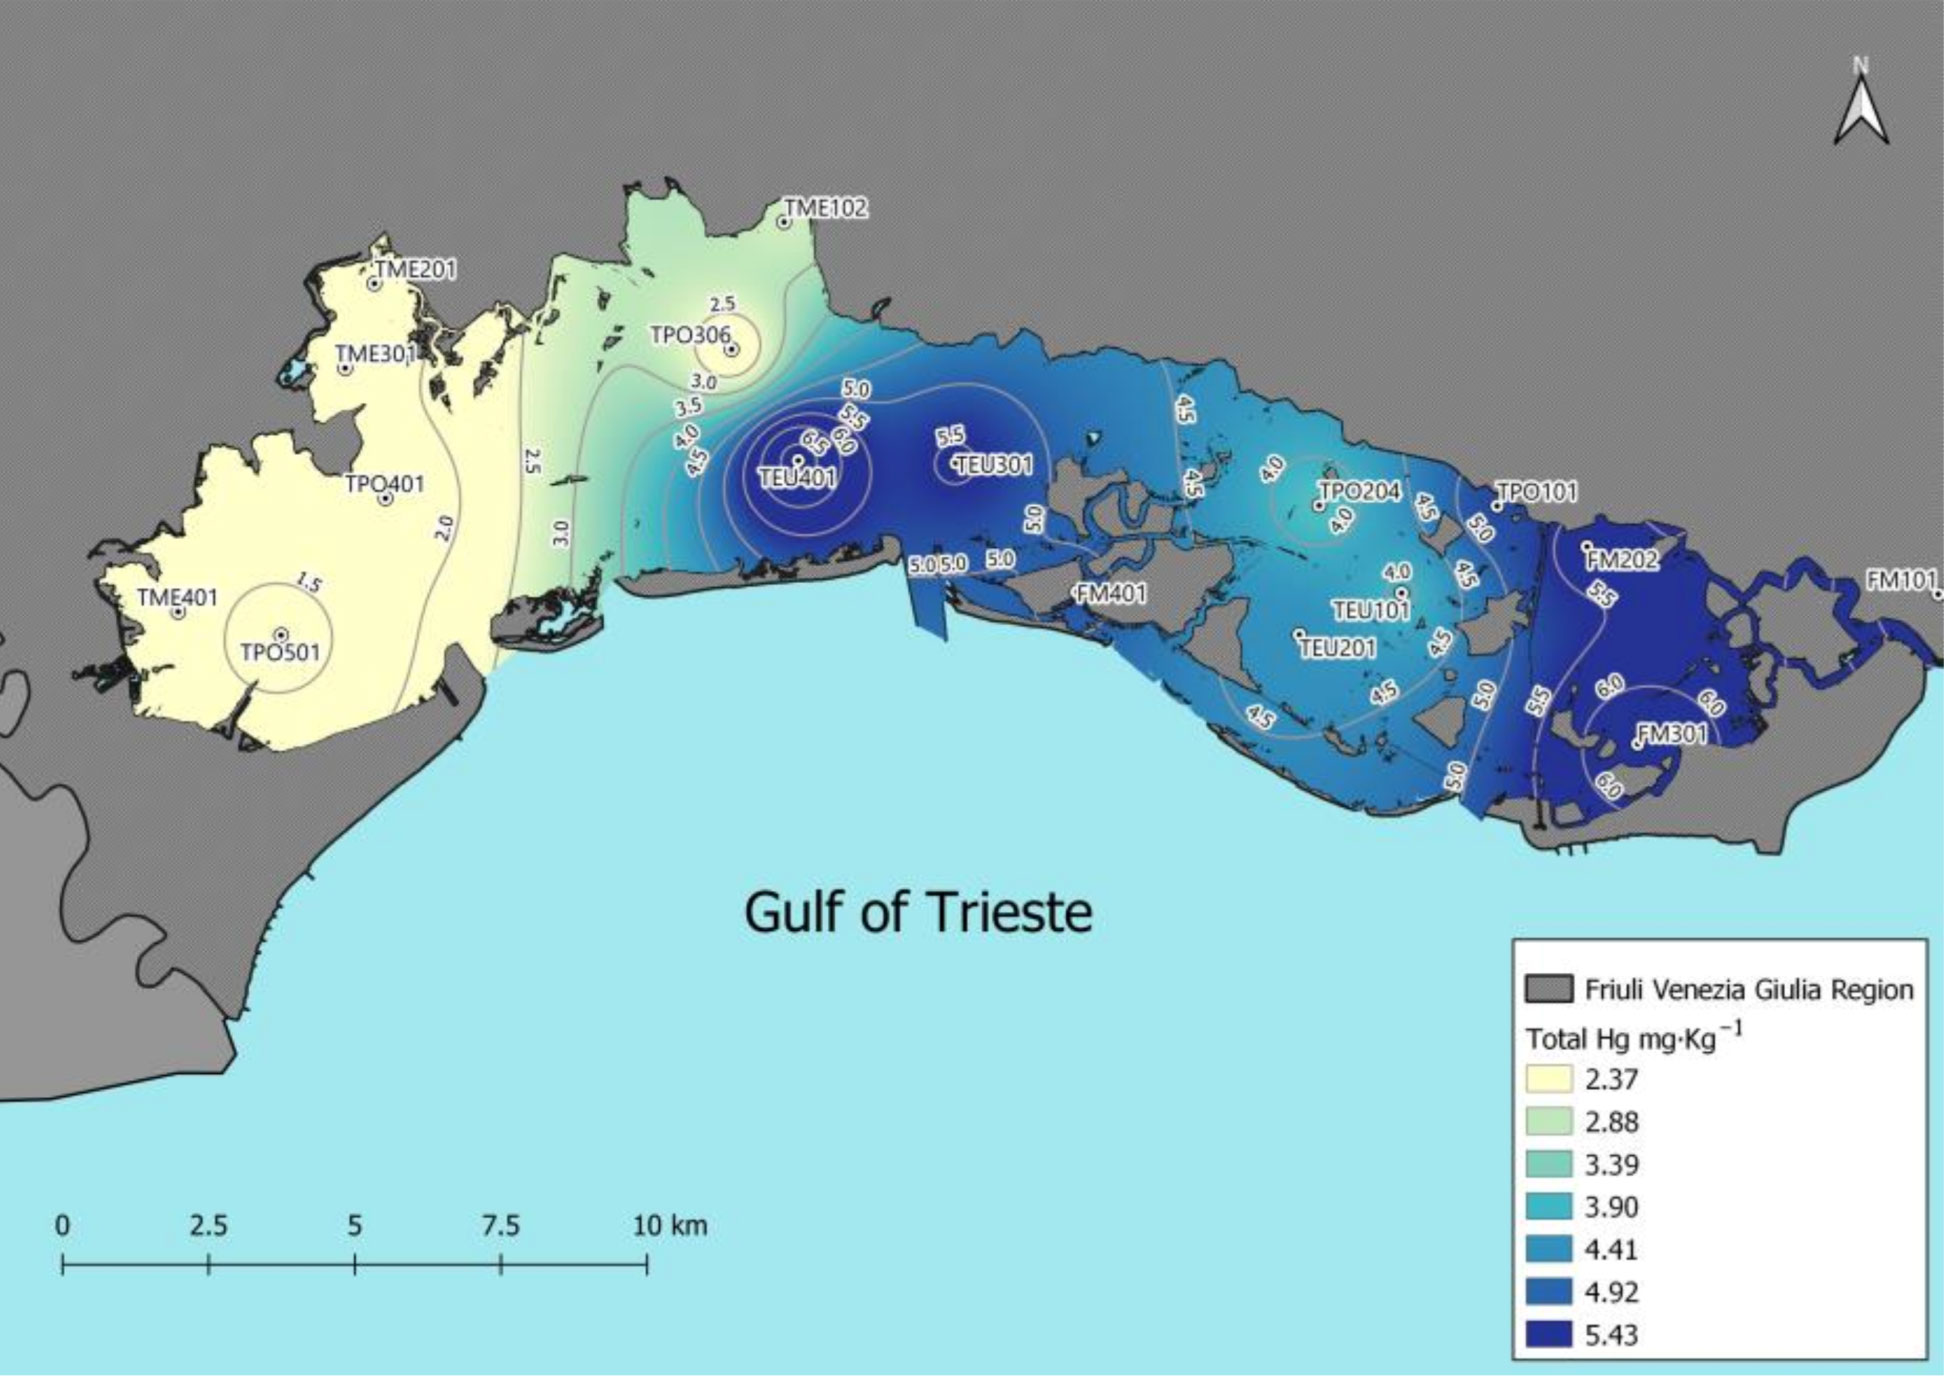 Distribuzione del Hg totale nei sedimenti superficiali della Laguna di Marano e Grado